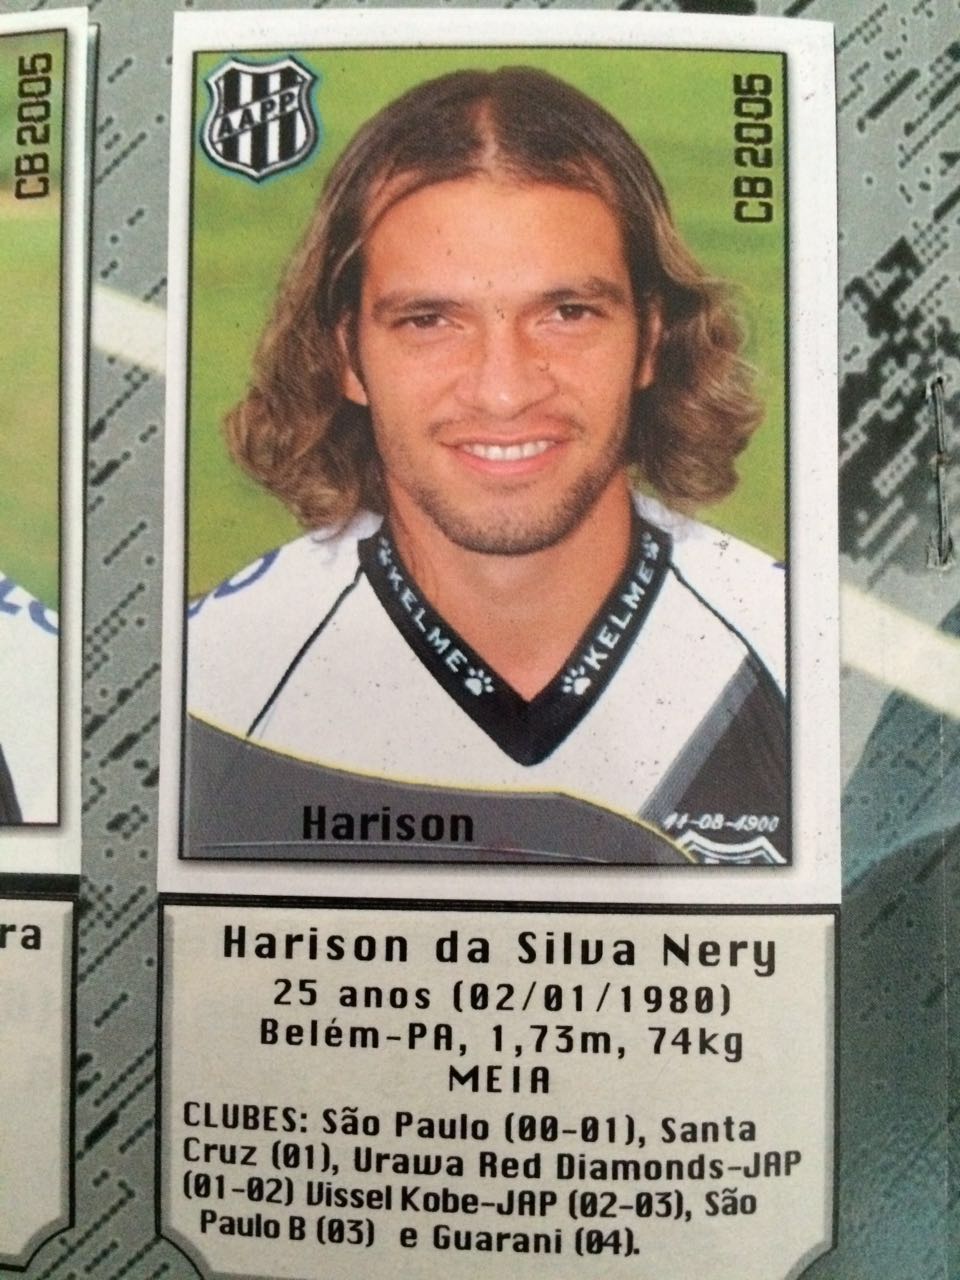 Harison da Silva Nery Biography - Brazilian footballer